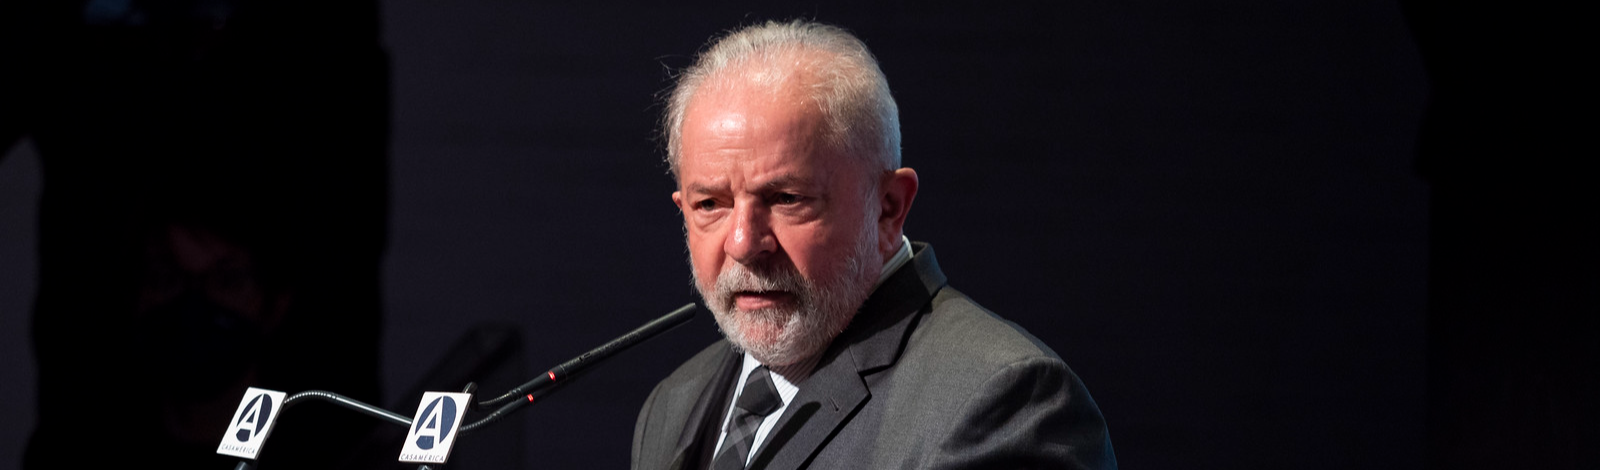 Política externa: o que programa do governo Lula indica sobre relações com Oriente Médio